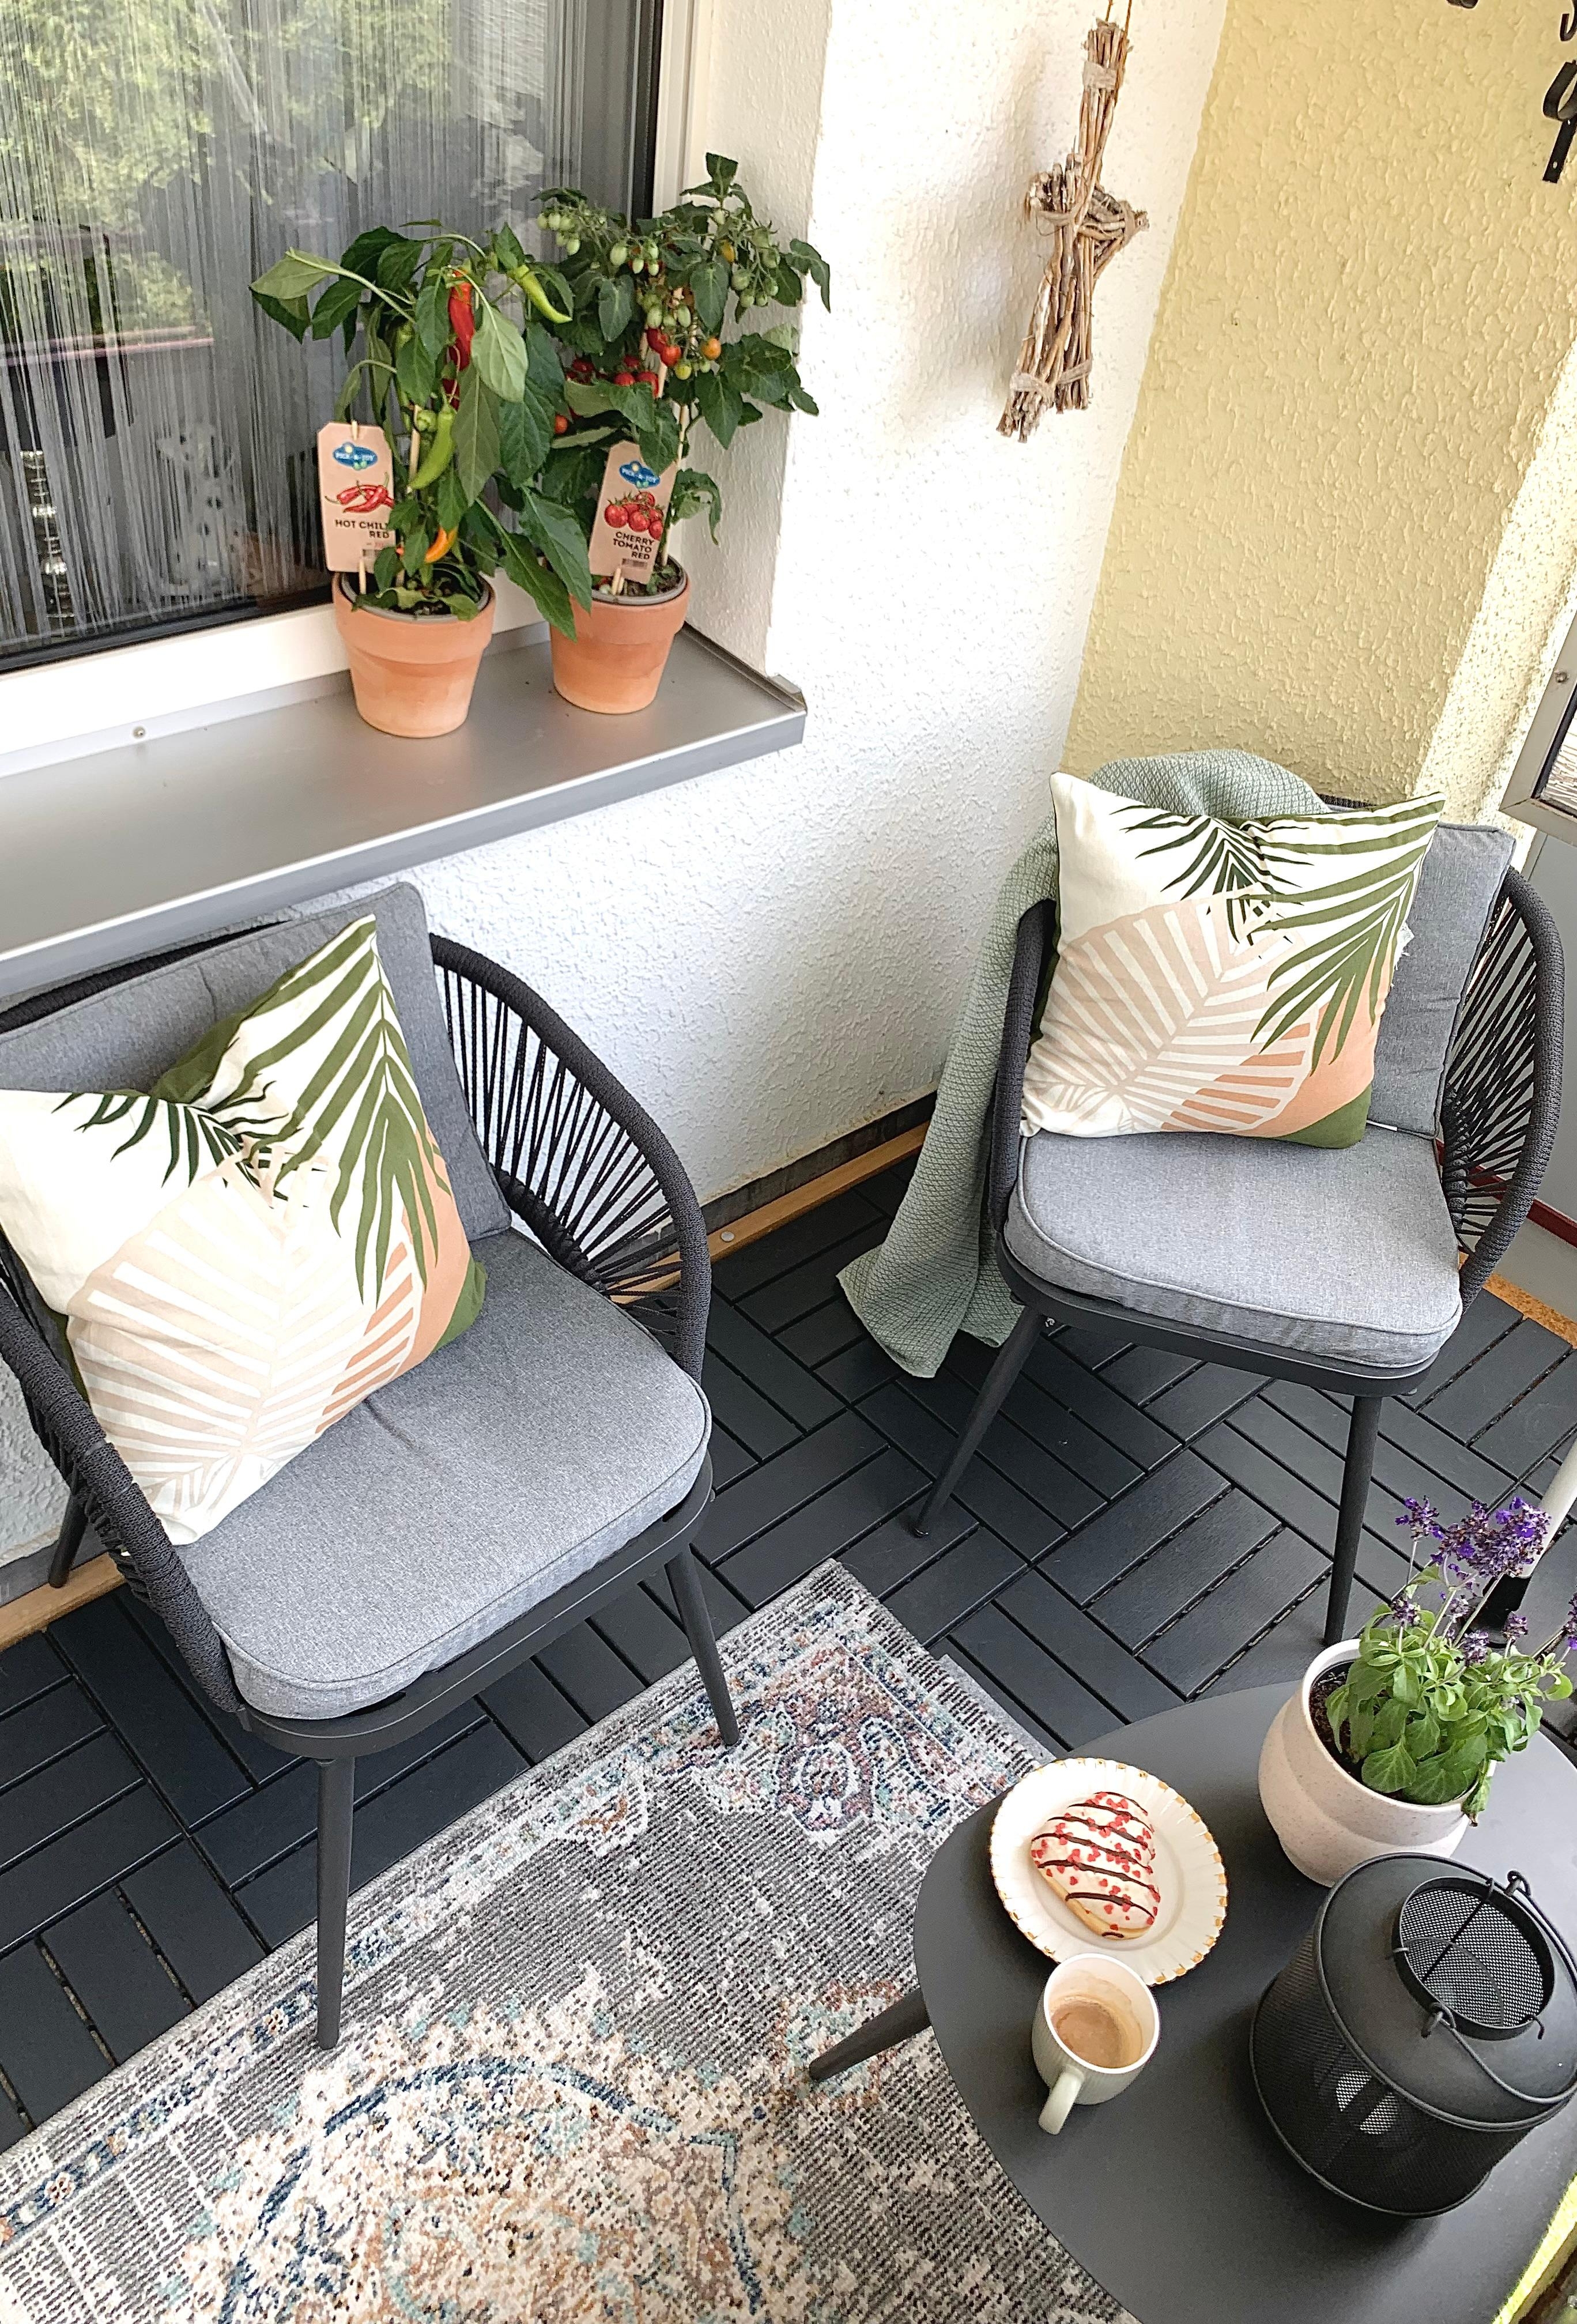 Mein  Balkon 🩶🤍
#stühle #outdoor #flower #snackgemüse #kissen #teppich #tisch #cafe #food #laterne 